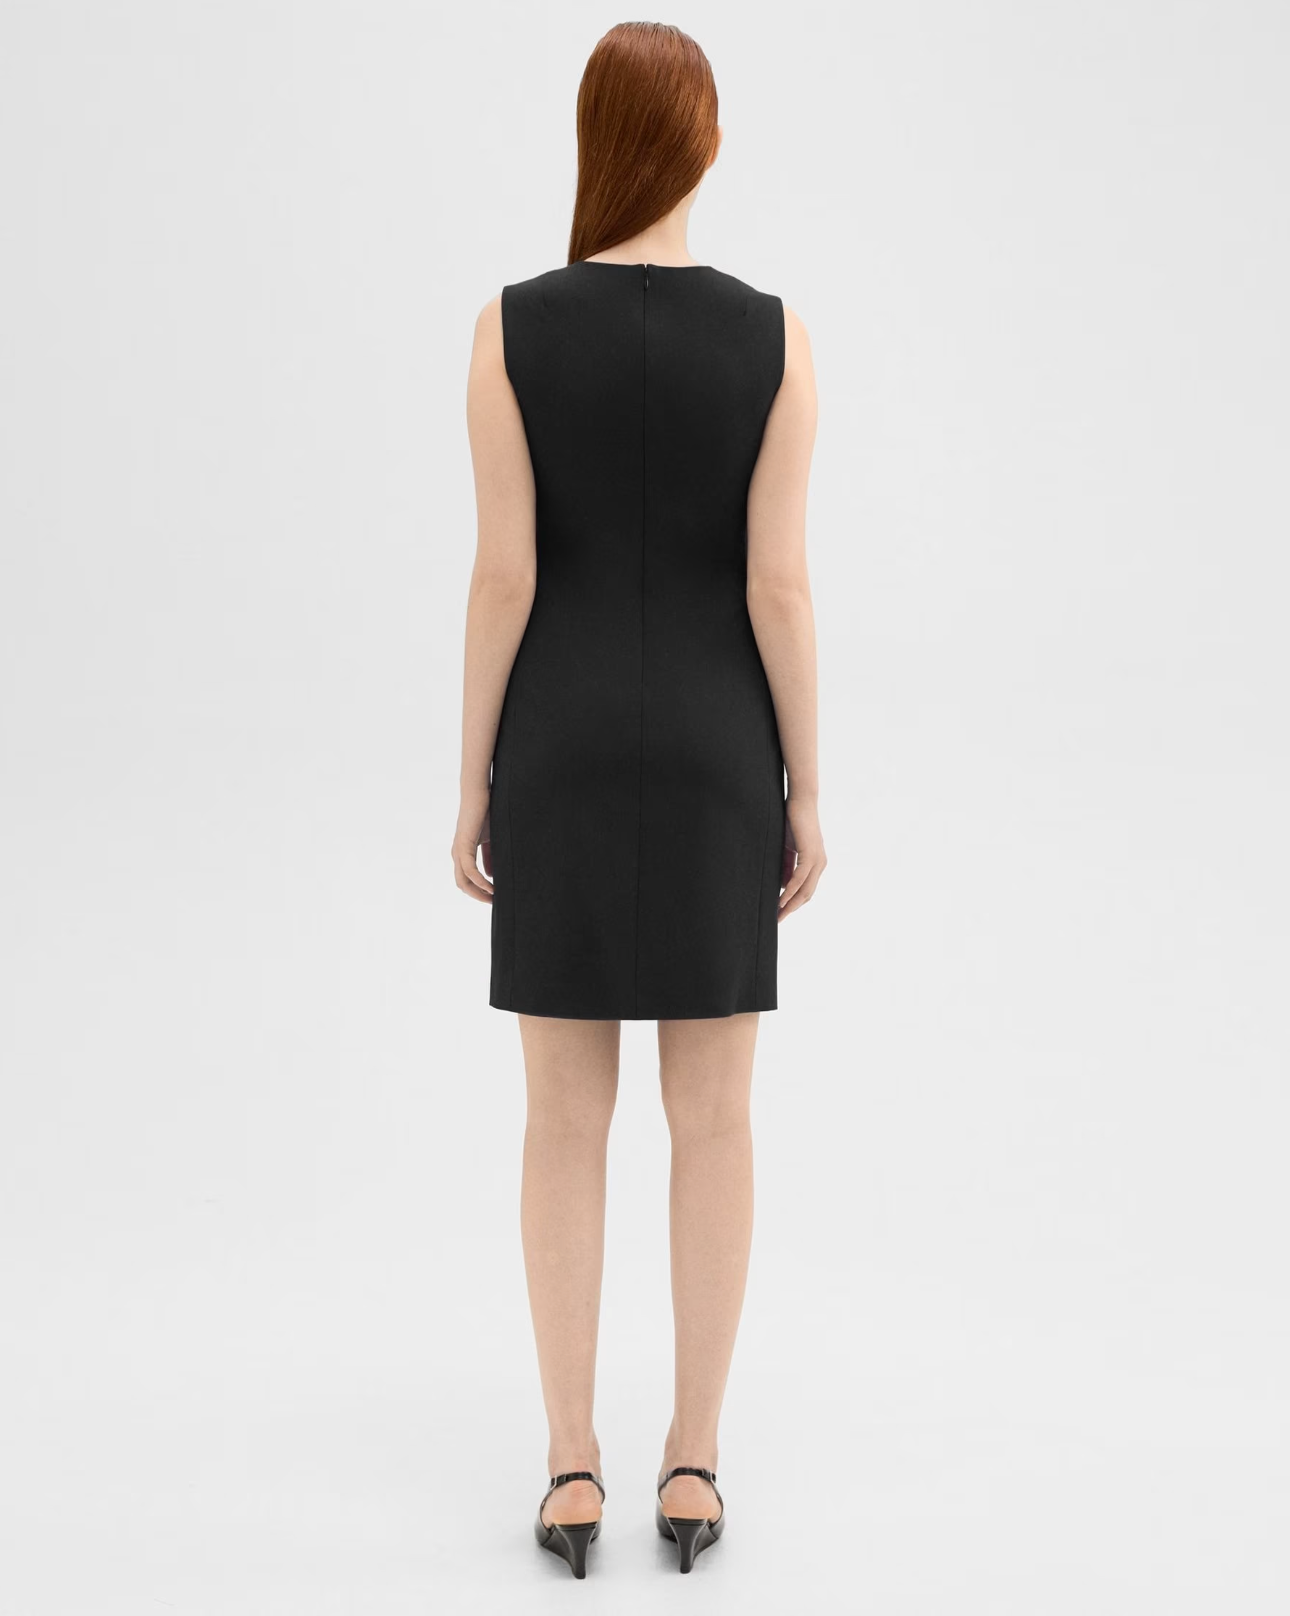 women's professional sheath dress in black